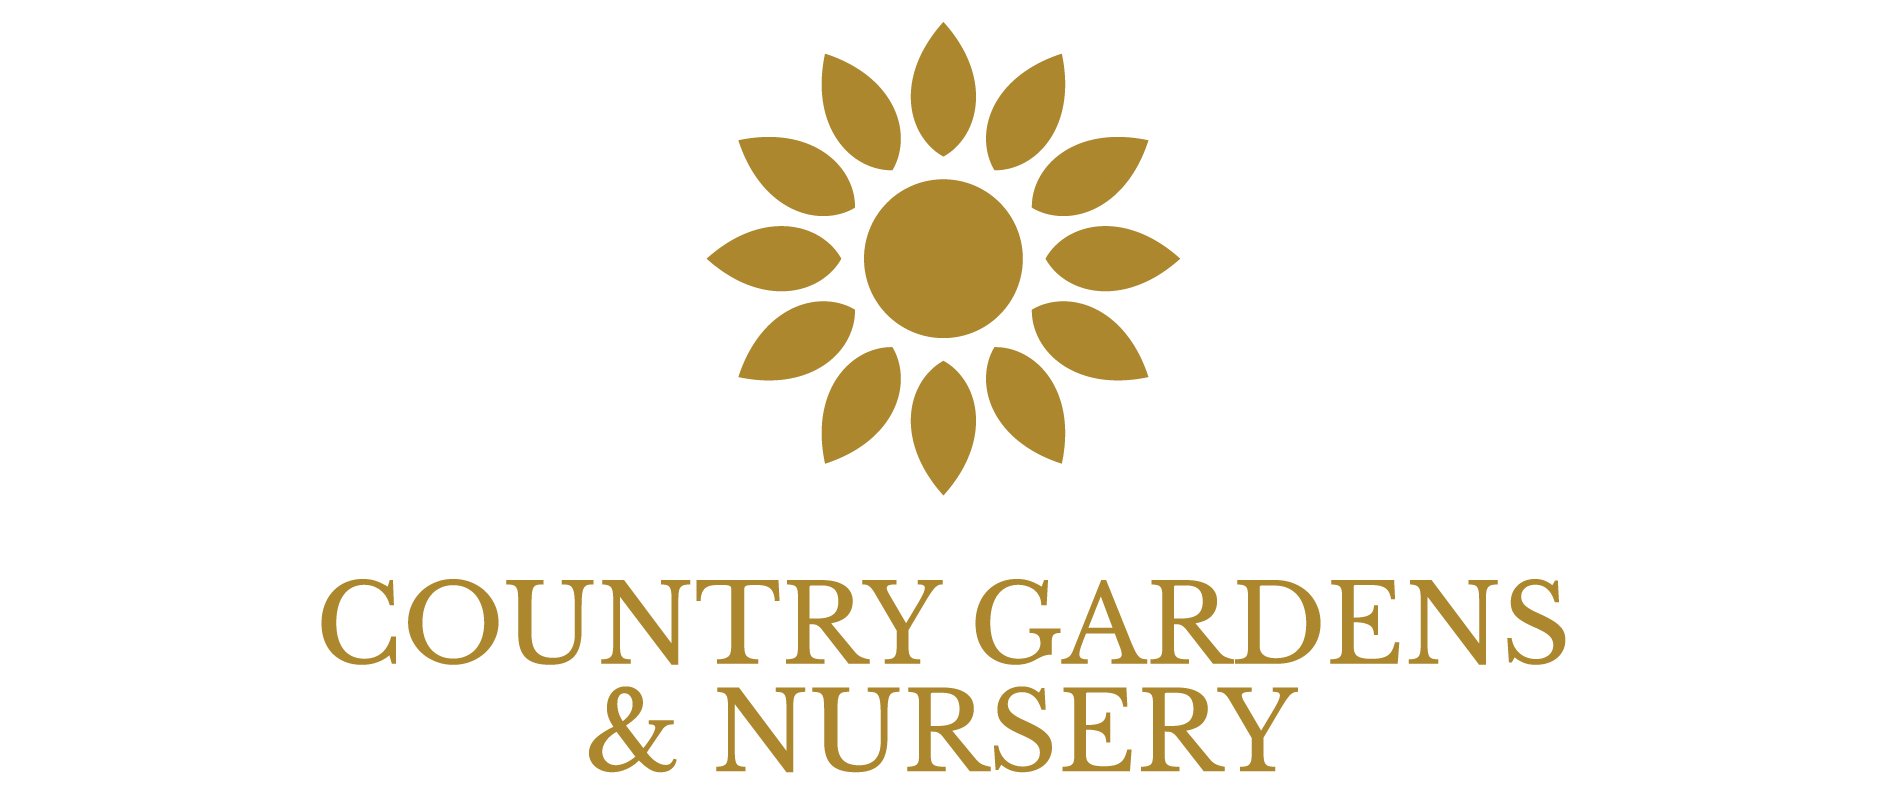 Country Gardens & Nursery, Heber City, Utah